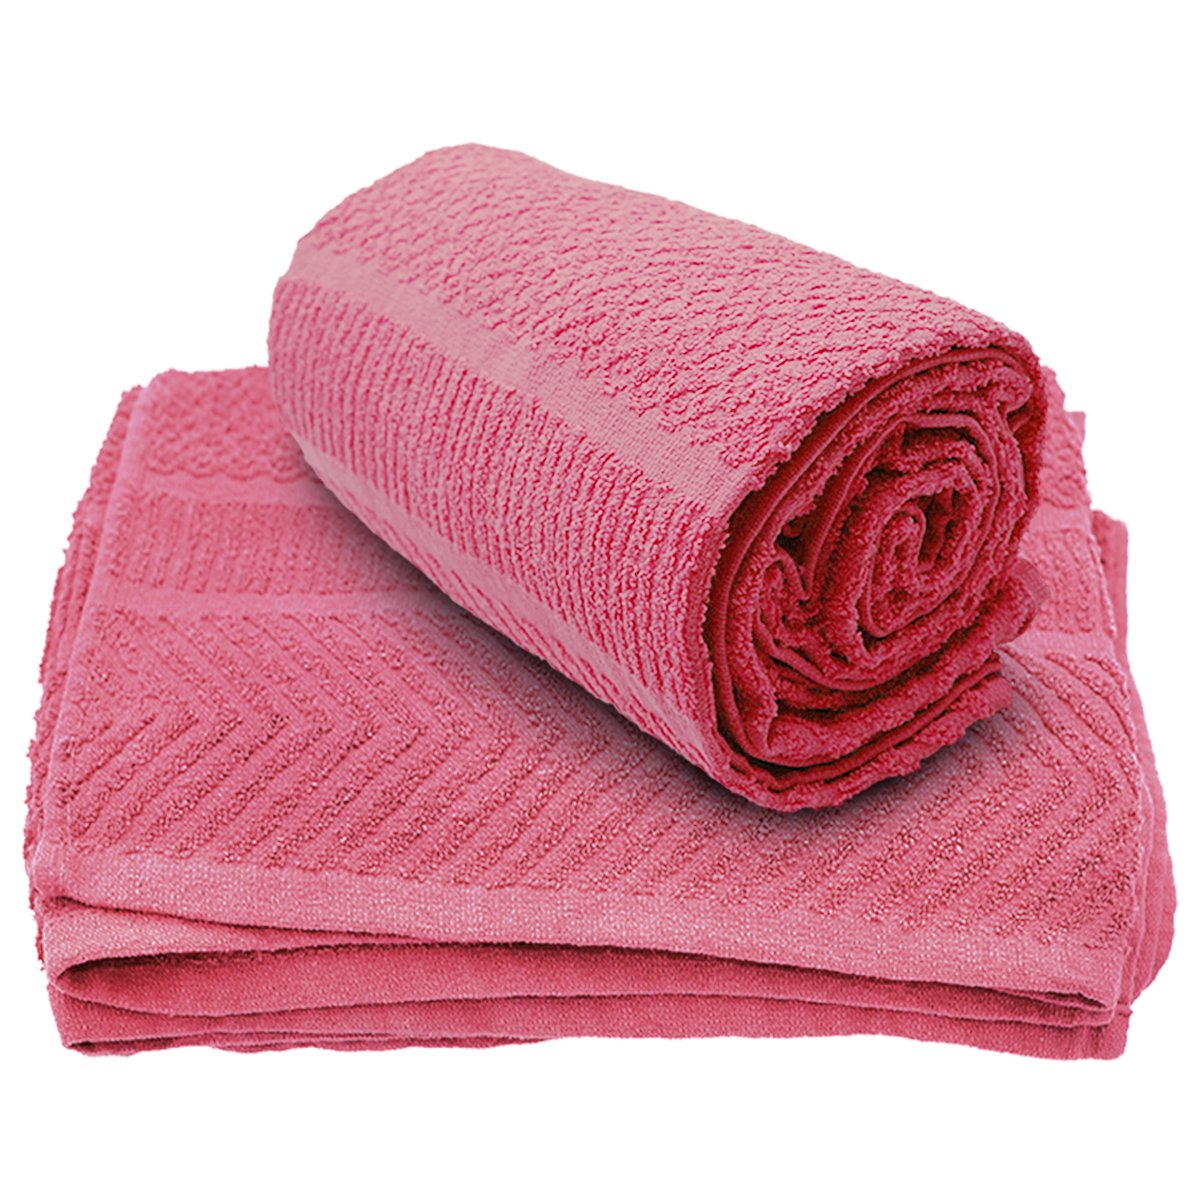  Toalla de playa de algodón egipcio, toalla de baño de tres  juegos de toallas de baño gruesas de color sólido, suave, cómoda,  disponible por separado, toallas calentadoras (color: Yu Se, tamaño